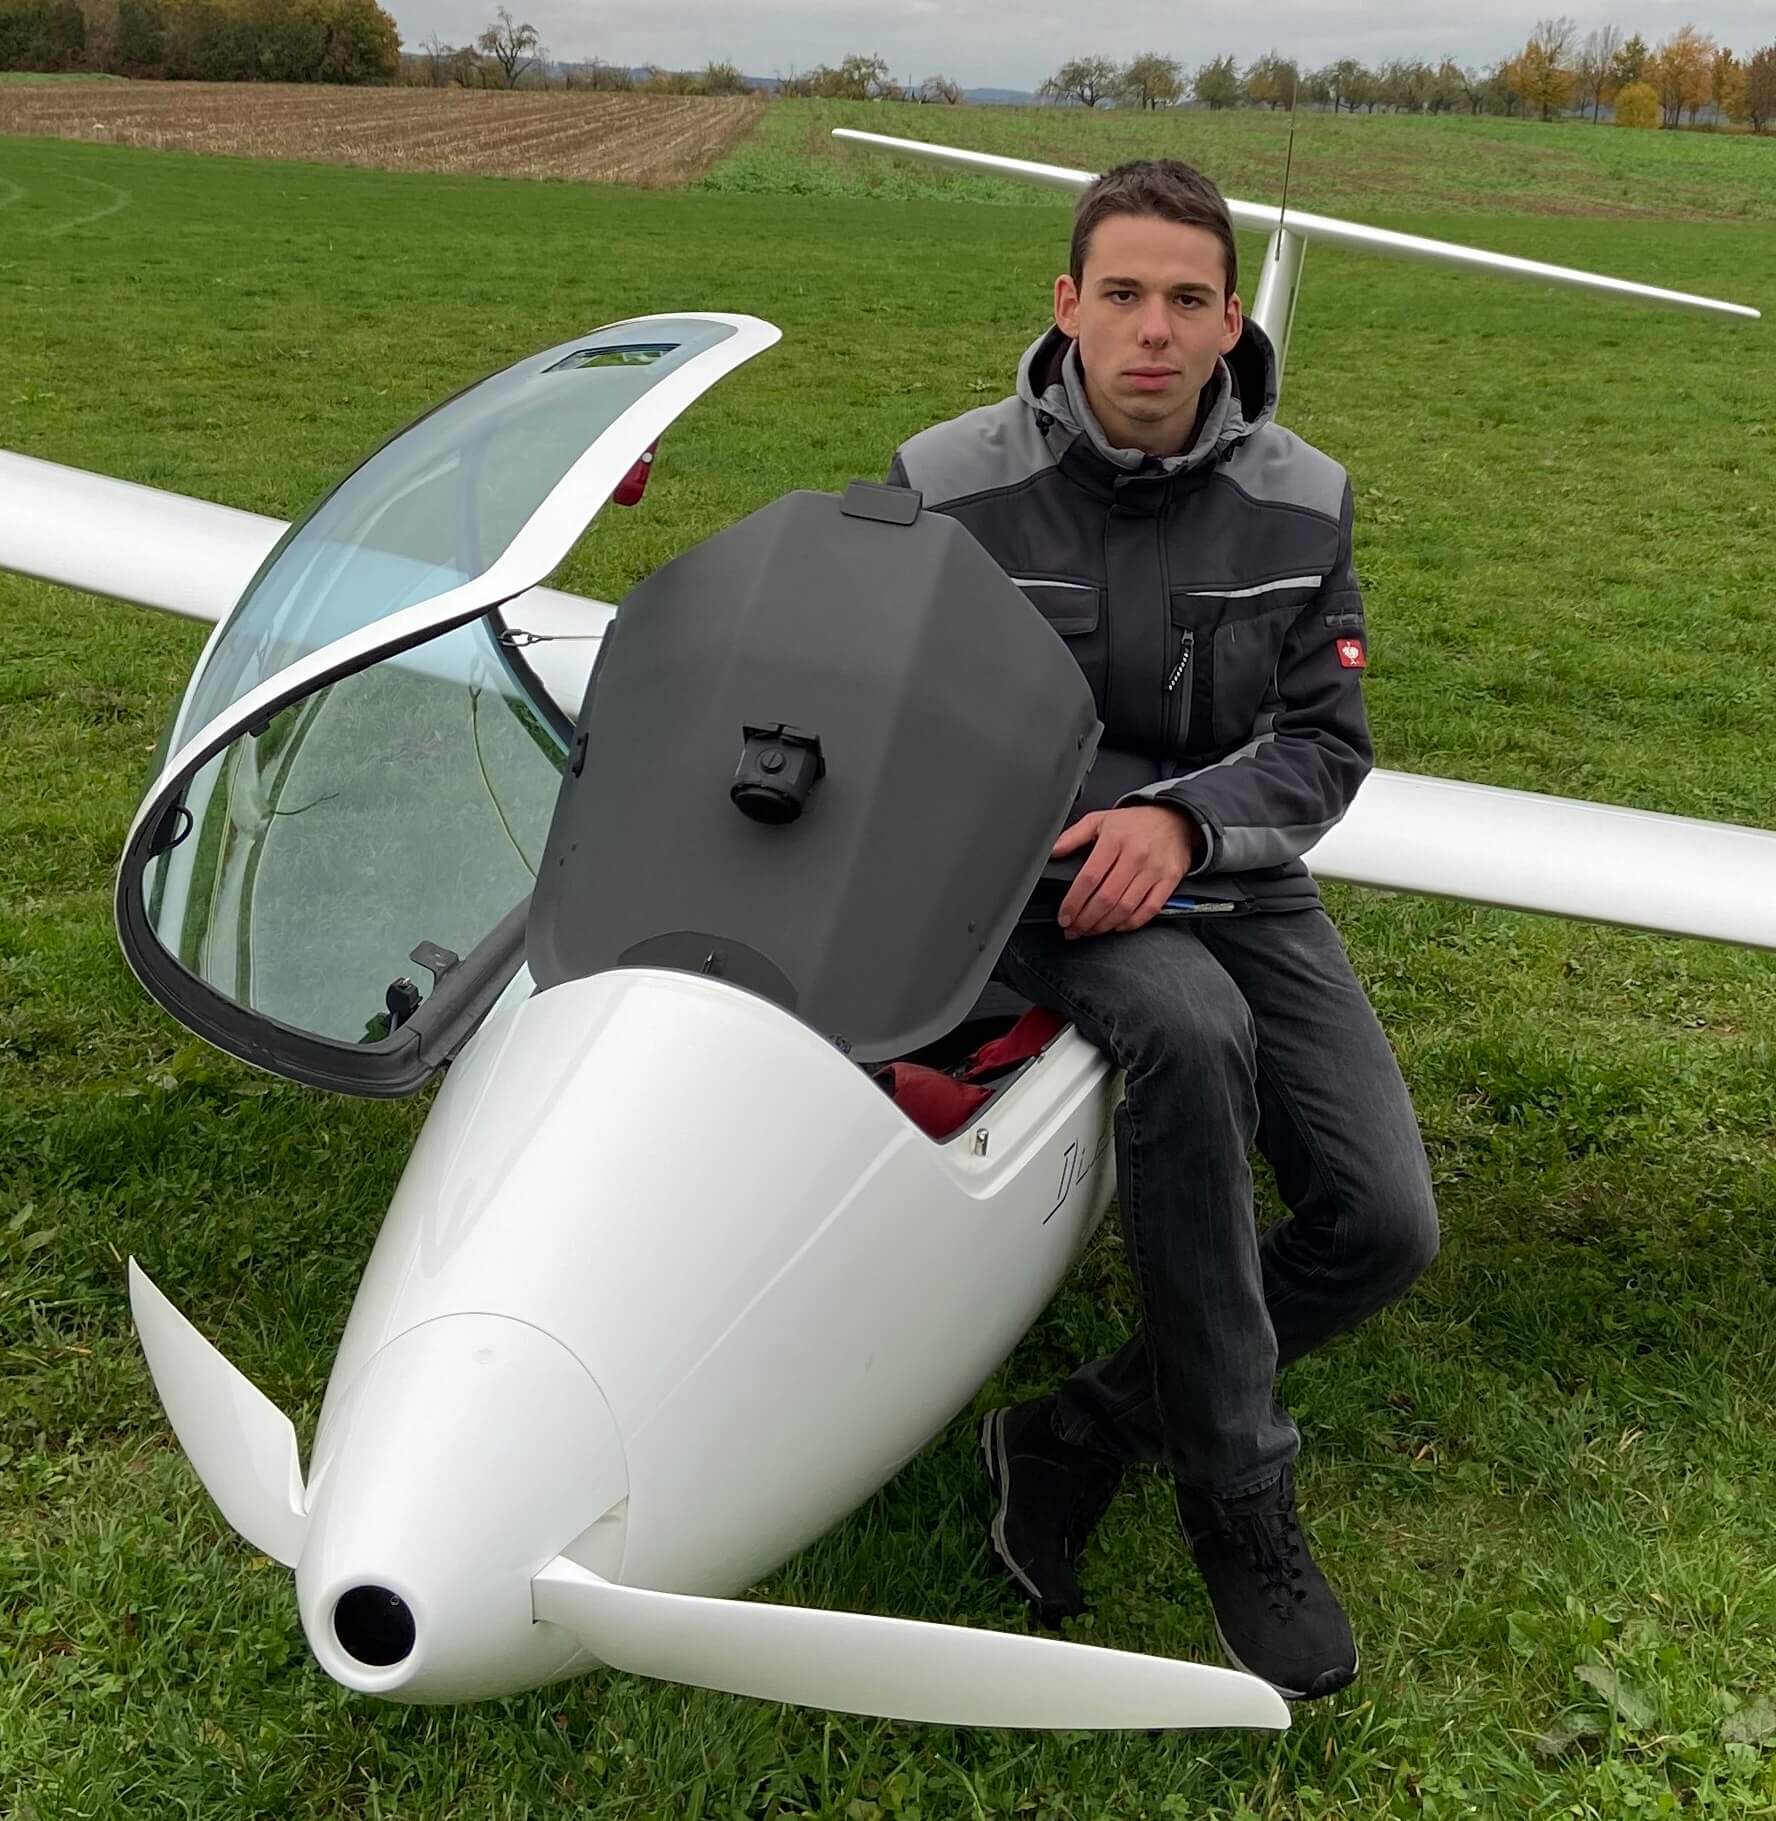 Bild von Moritz neben einem Segelflugzeug